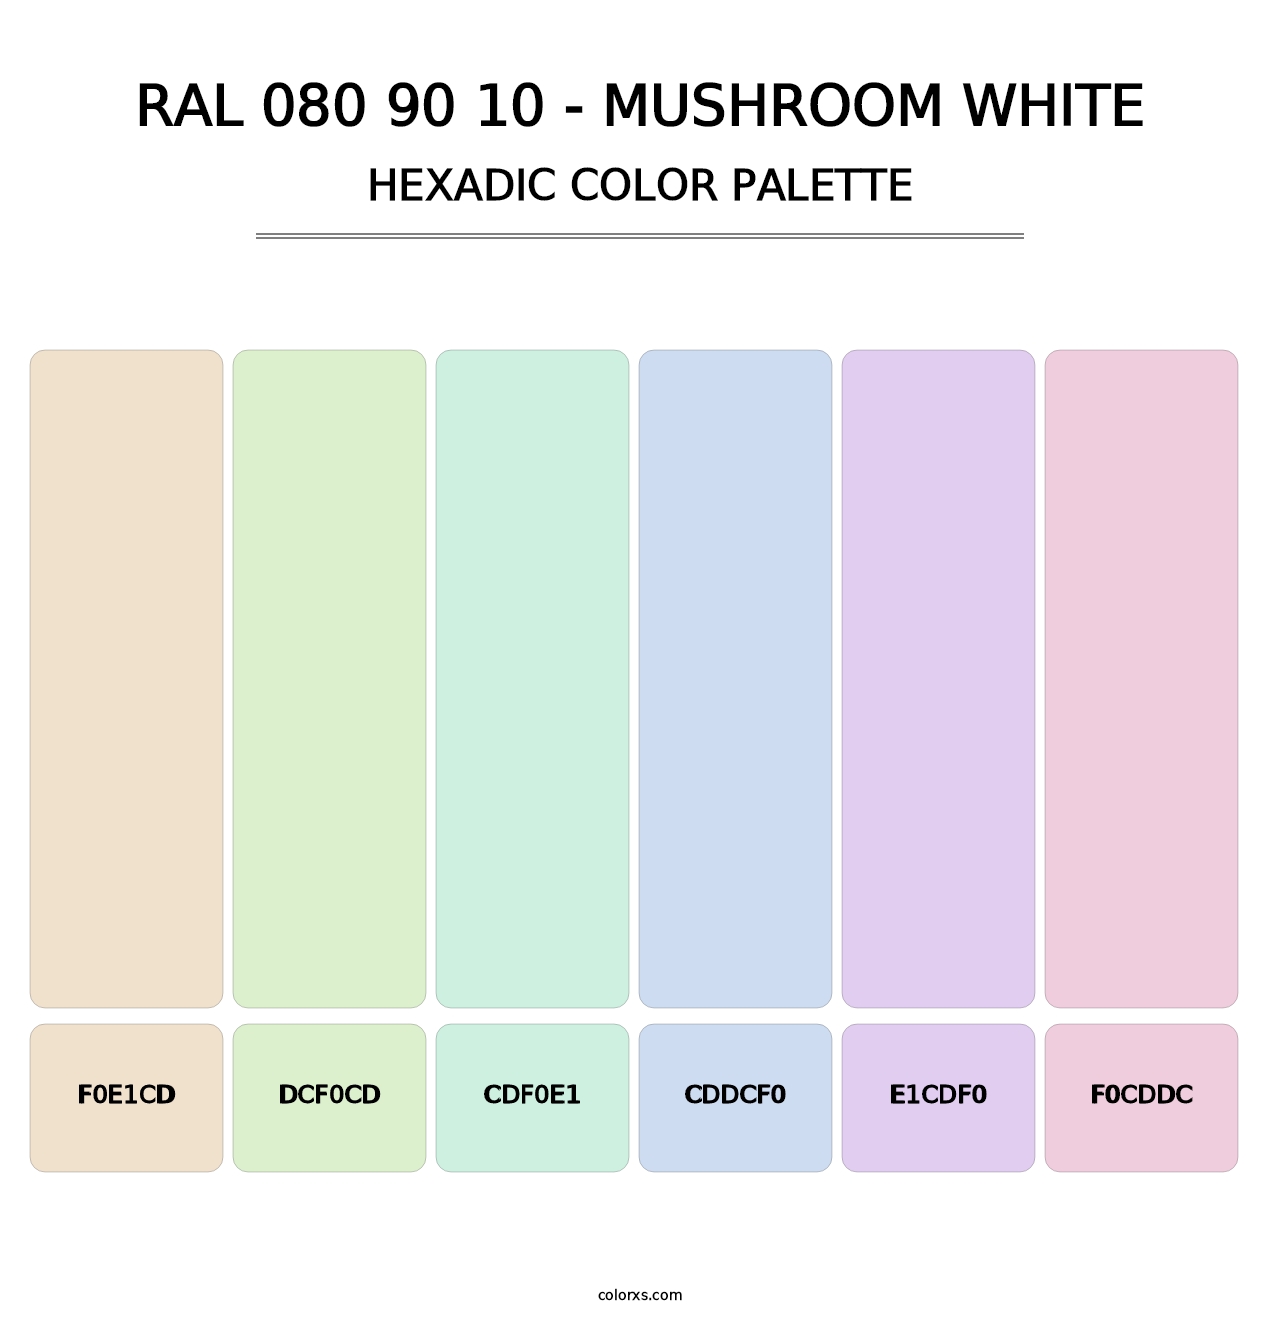 RAL 080 90 10 - Mushroom White - Hexadic Color Palette